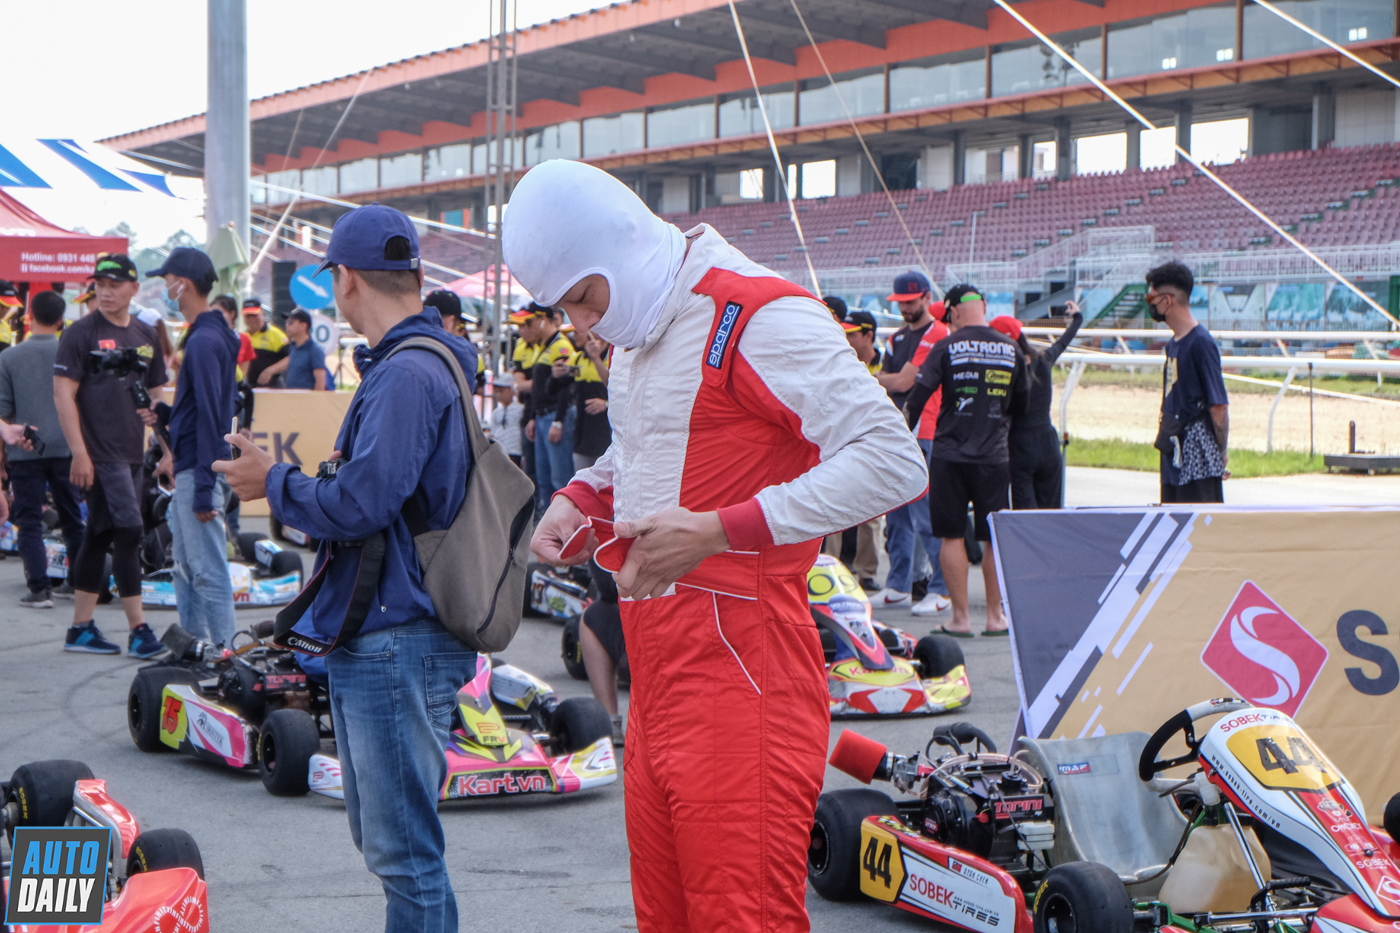 Toàn cảnh giải đua xe Go-Kart lớn nhất từ trước đến nay tại Việt Nam Giải đua xe Go-Kart Thắng hay thua, đua mới biết mùa 2 (8).JPG